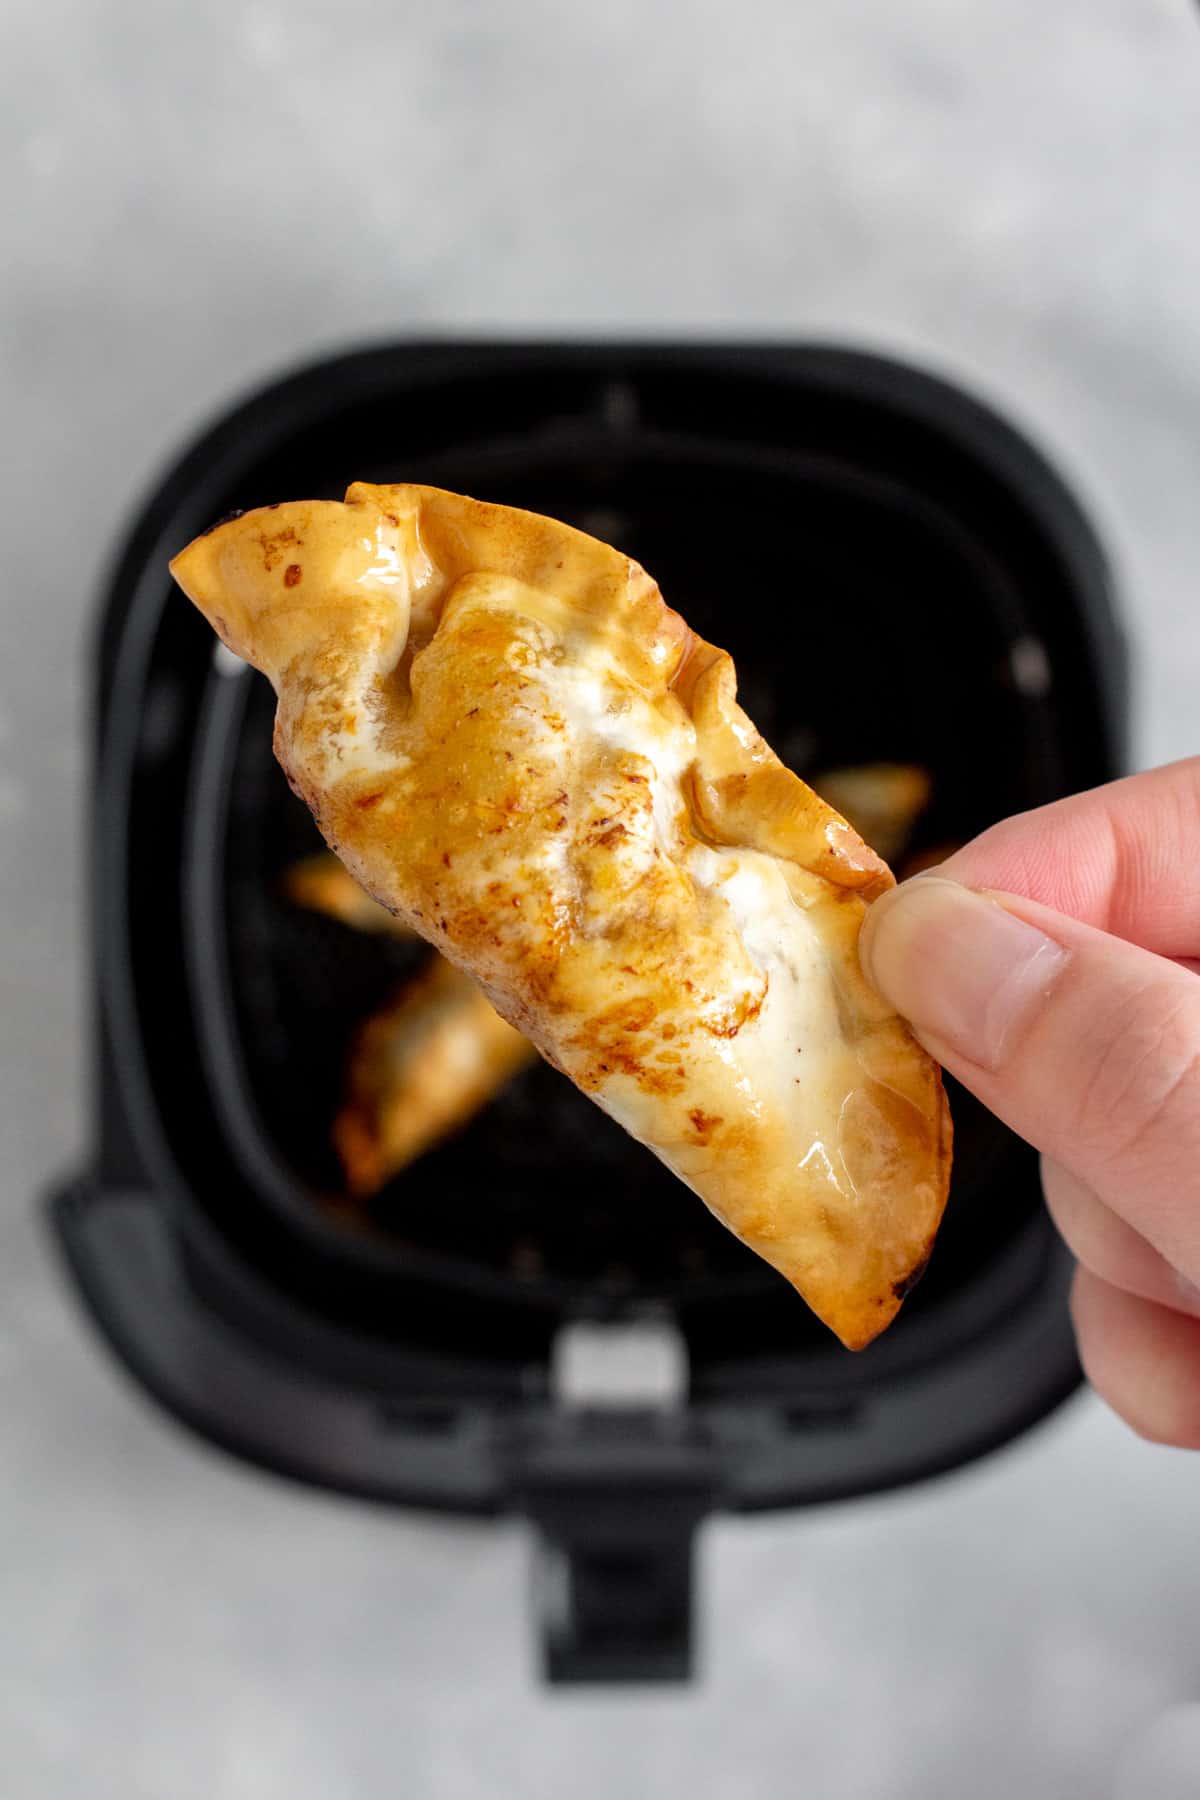 Hand holding a crispy air fryer dumpling.